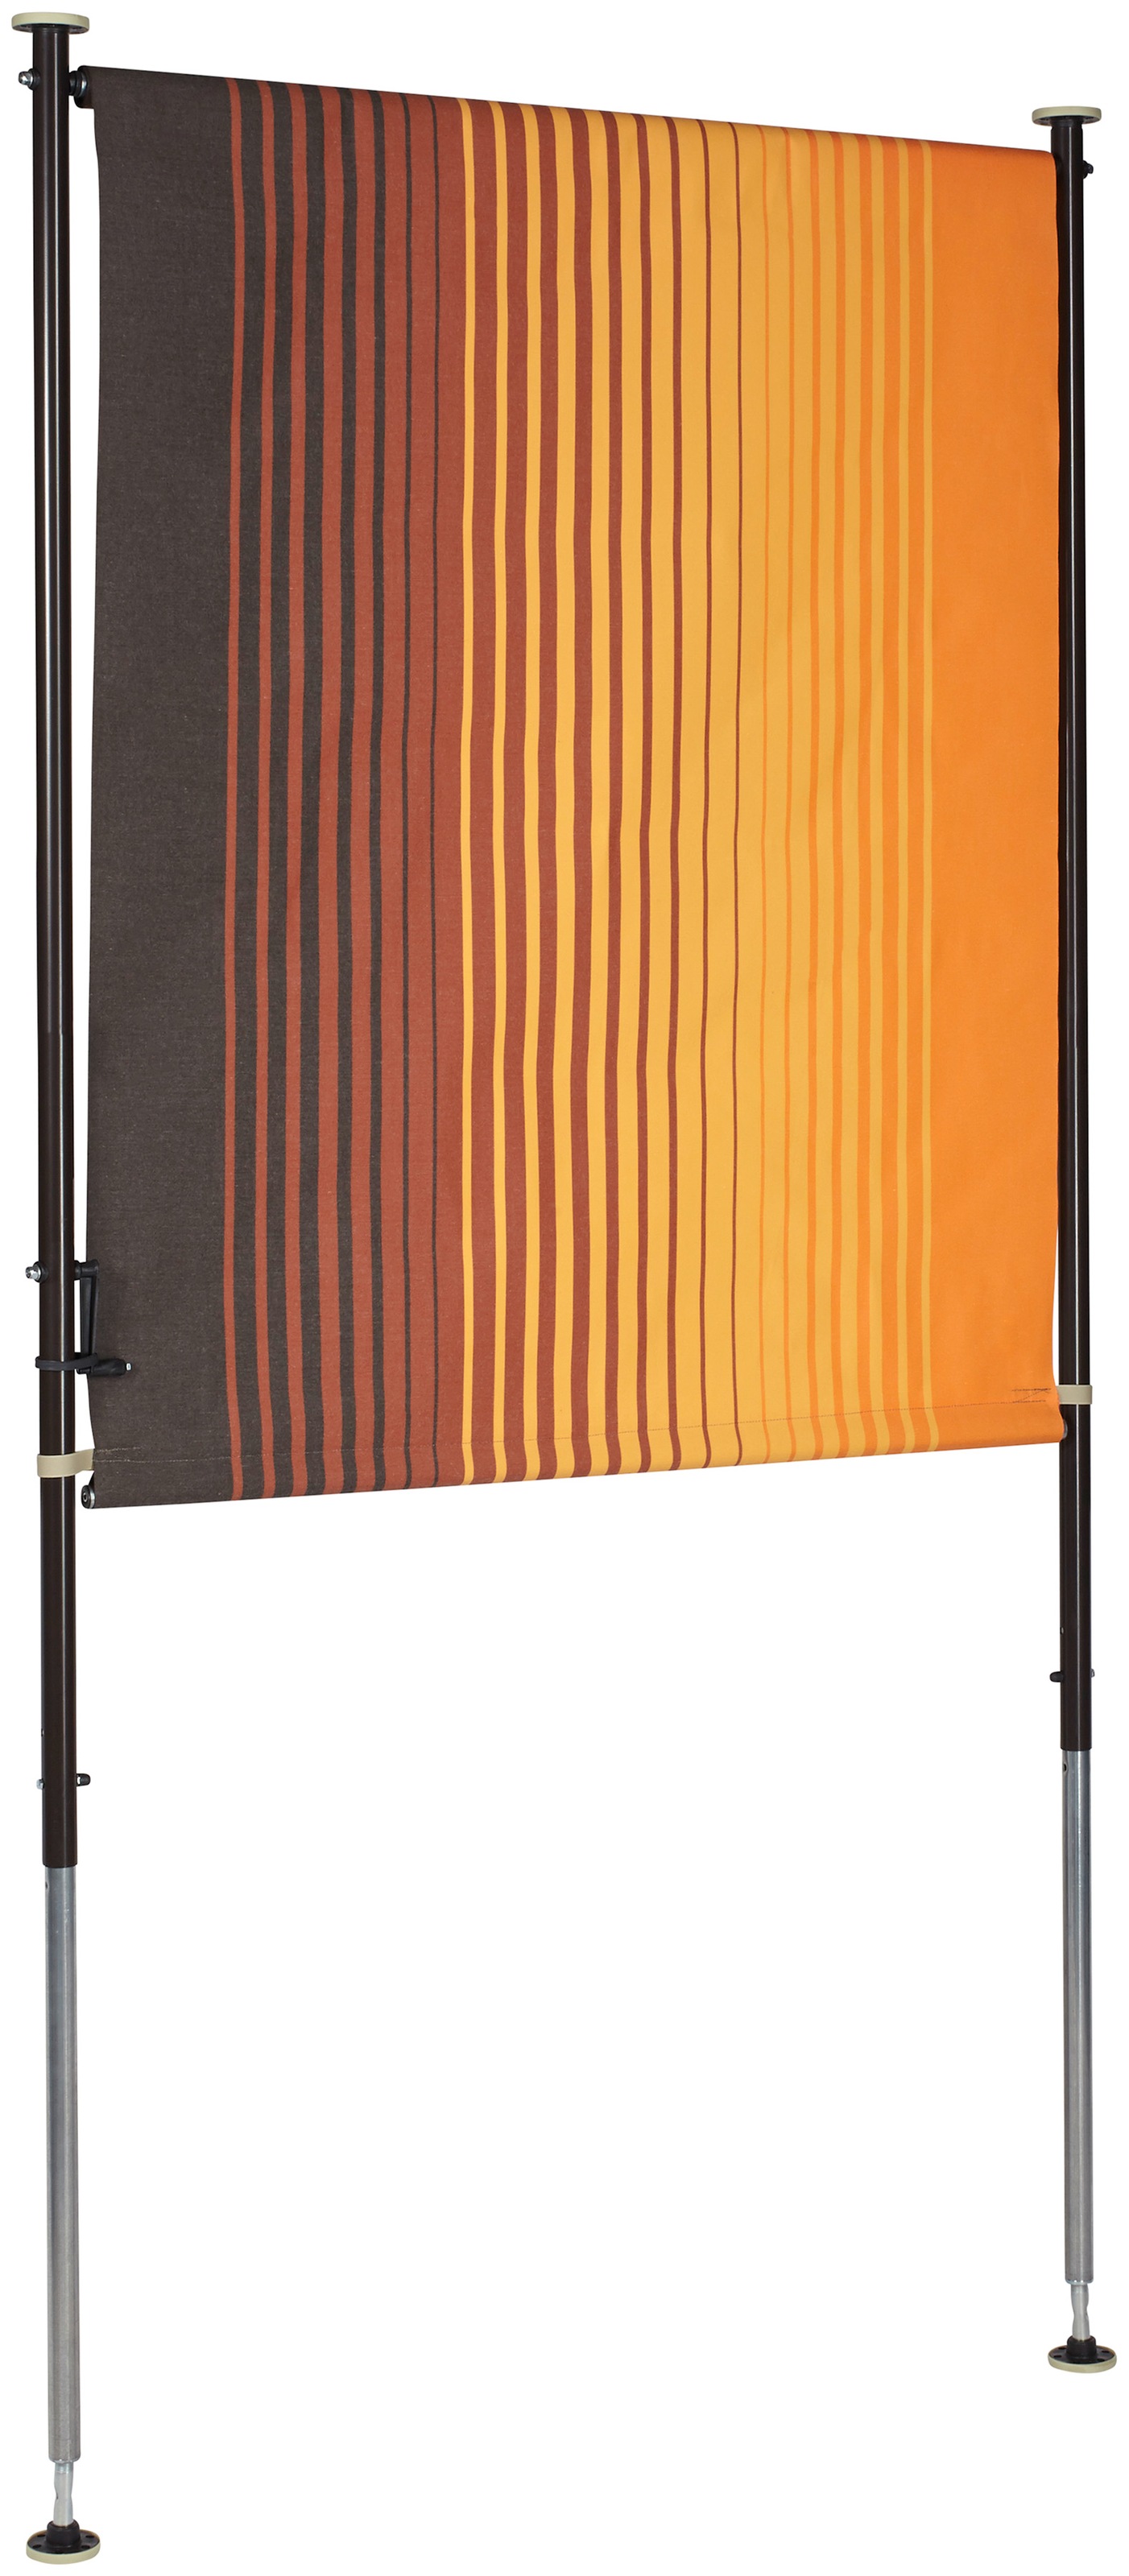 Angerer Freizeitmöbel Klemm-Senkrechtmarkise »Nr. 100«, orange/braun, BxH: 150x225 cm